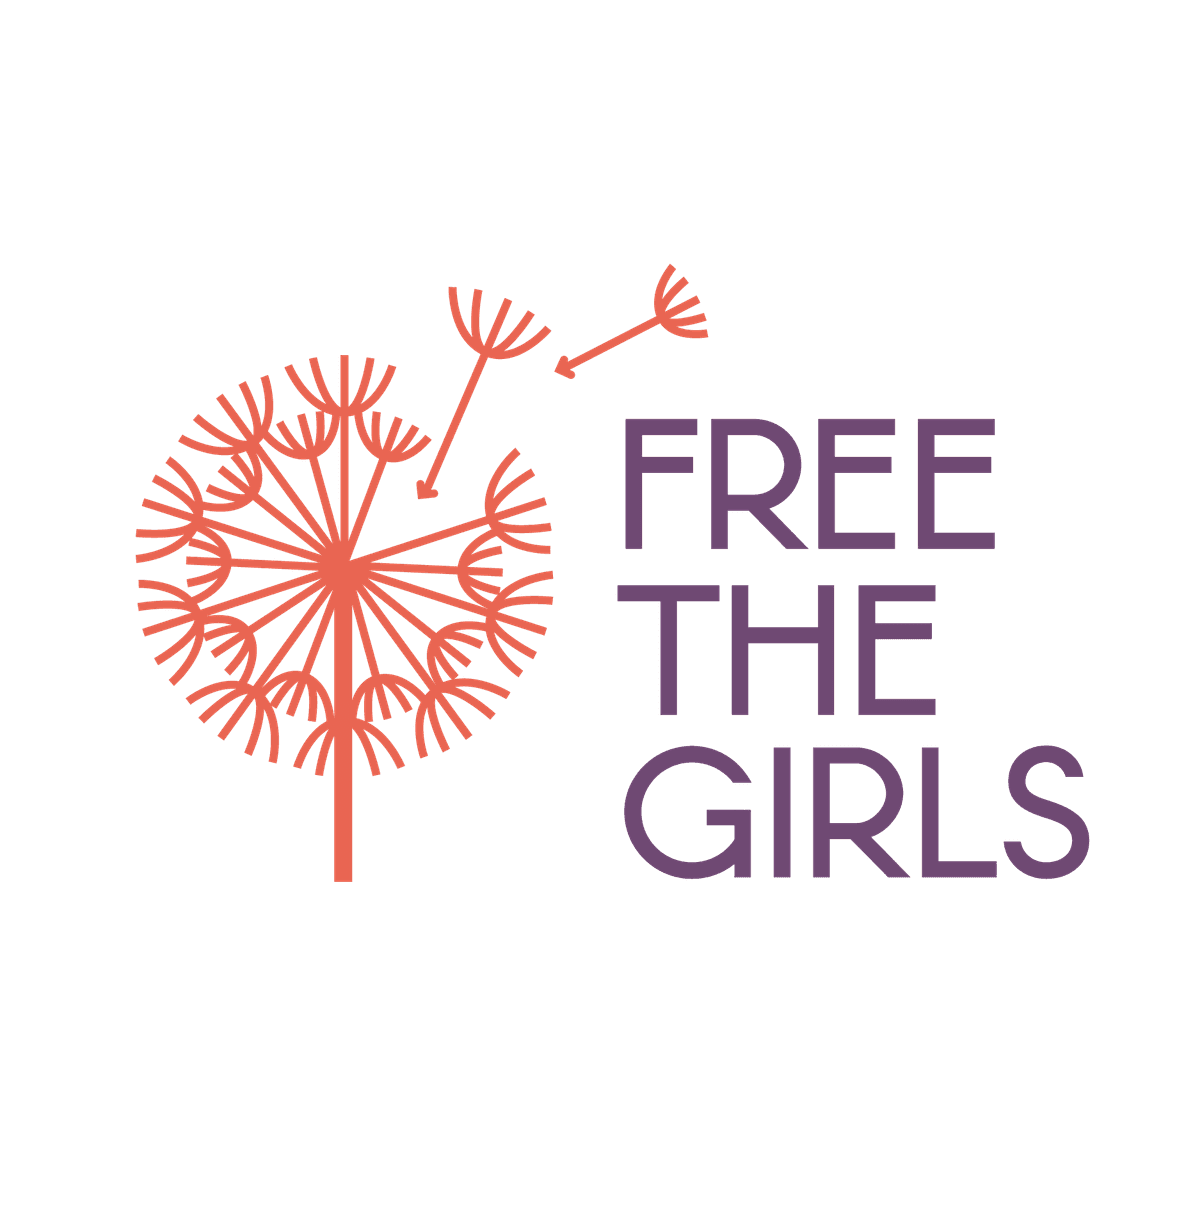 Free The Girls logo